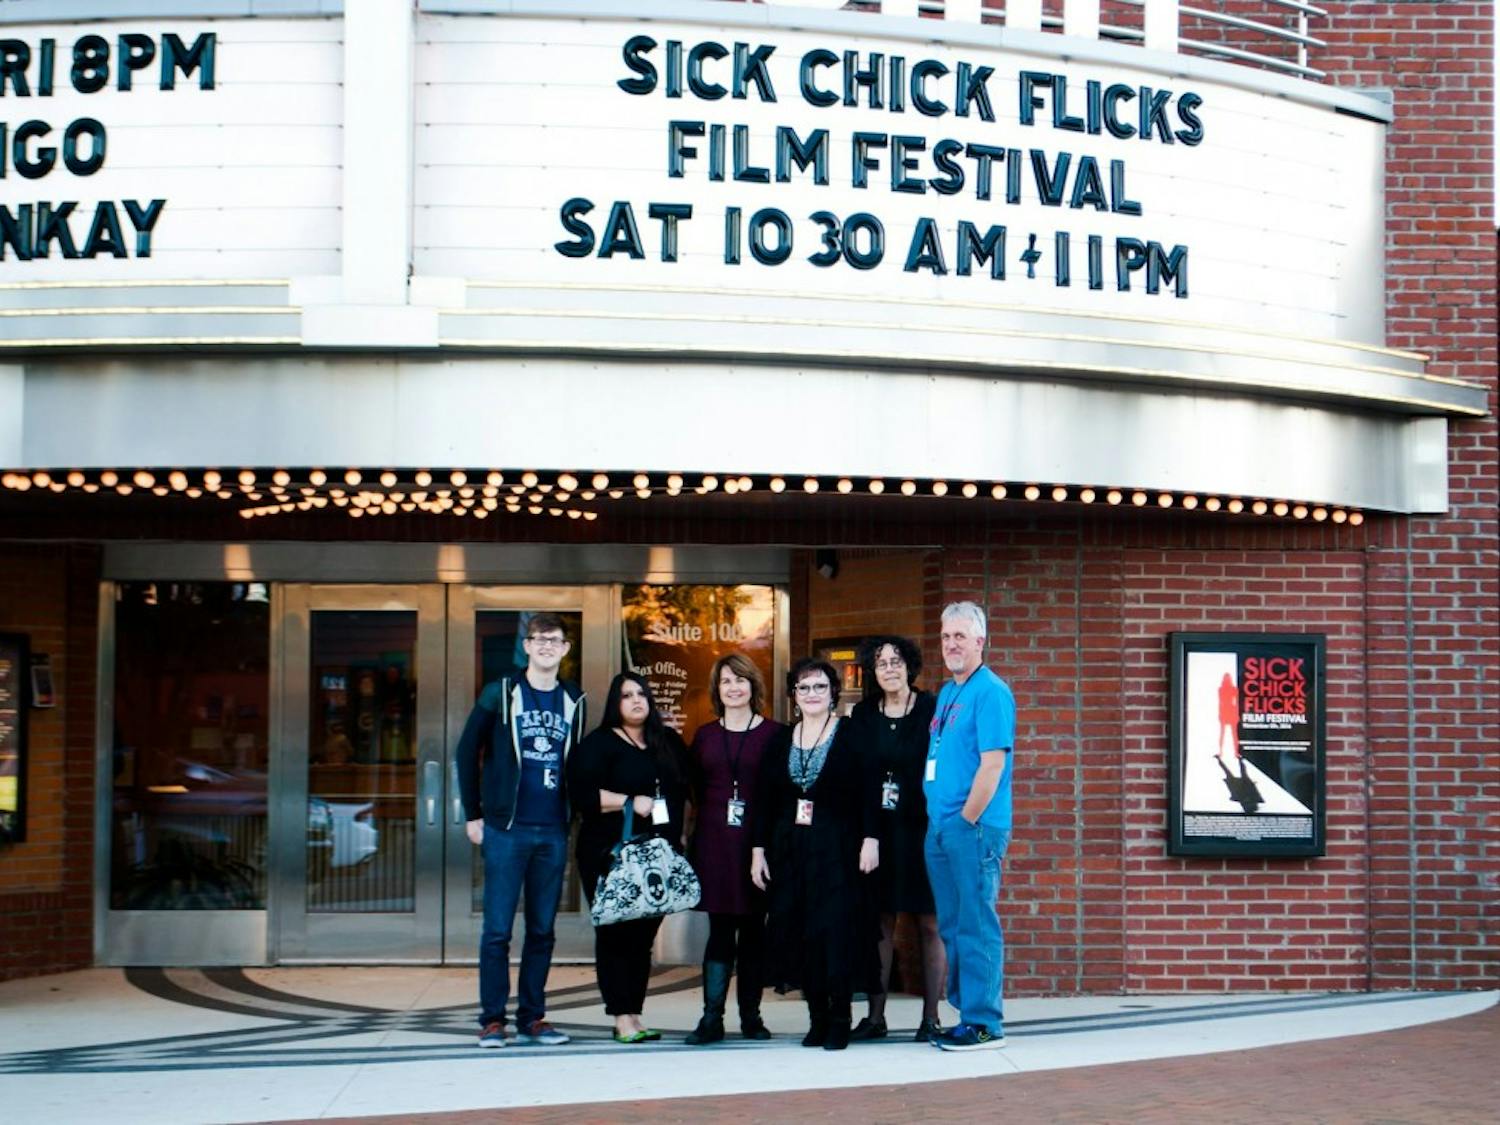 Sick Chick Flicks